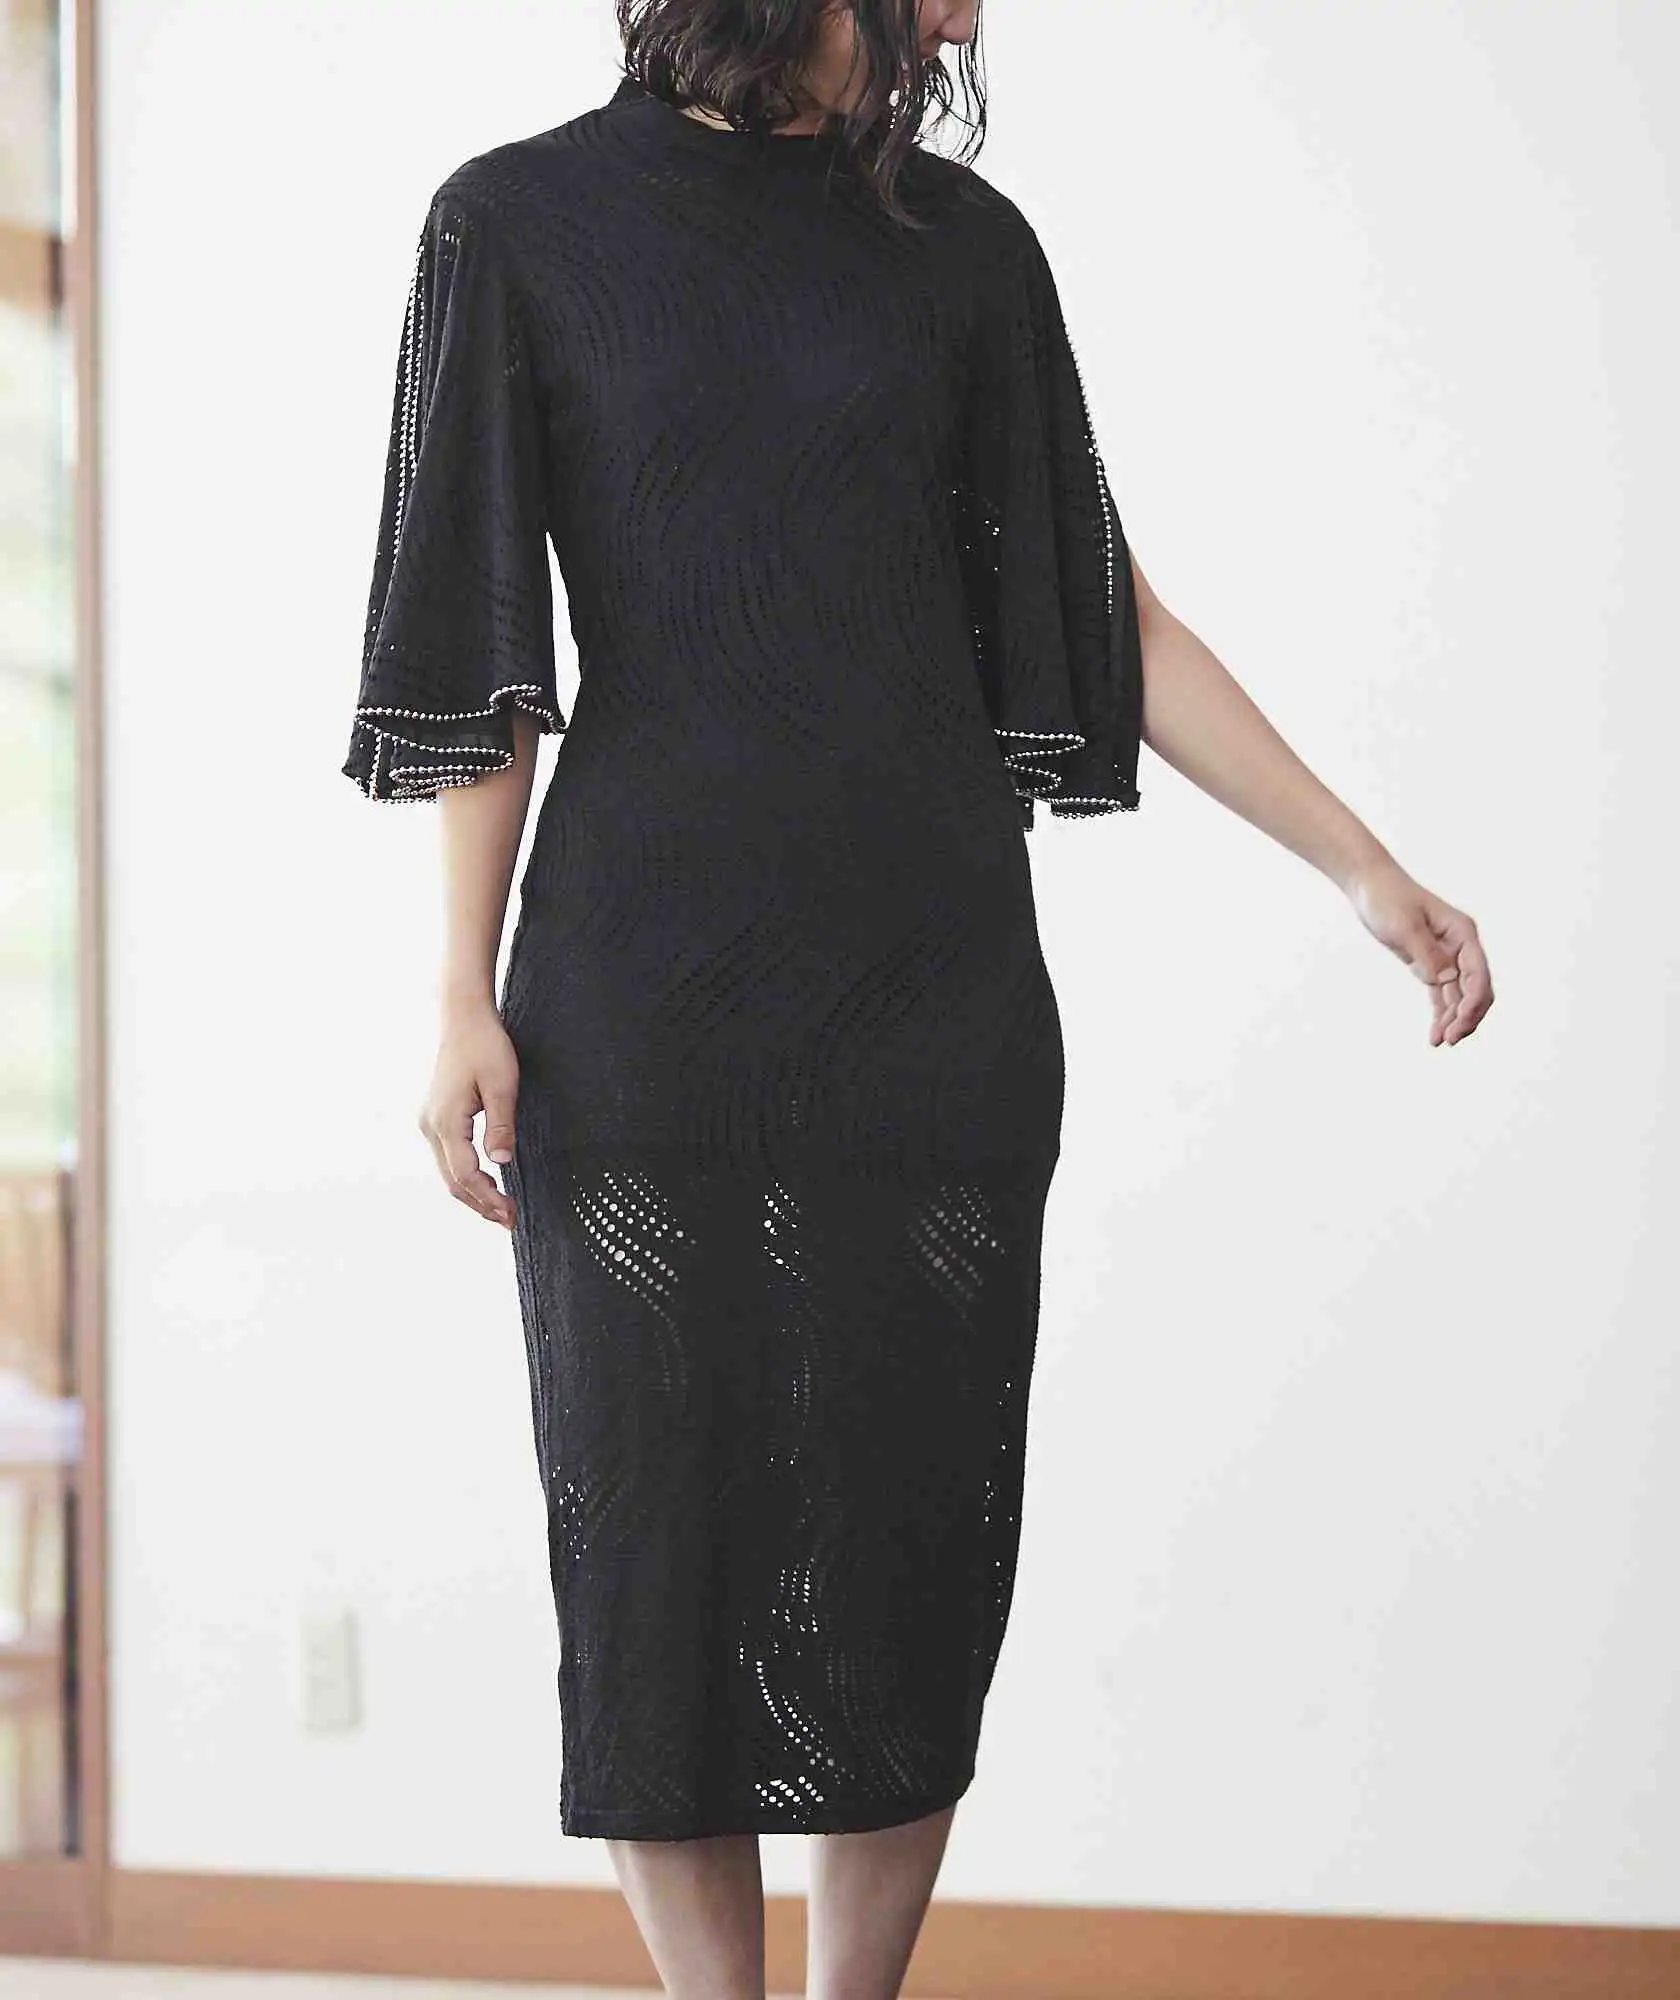 スリーブデザインタイトミディアムドレス-ブラック-M-L